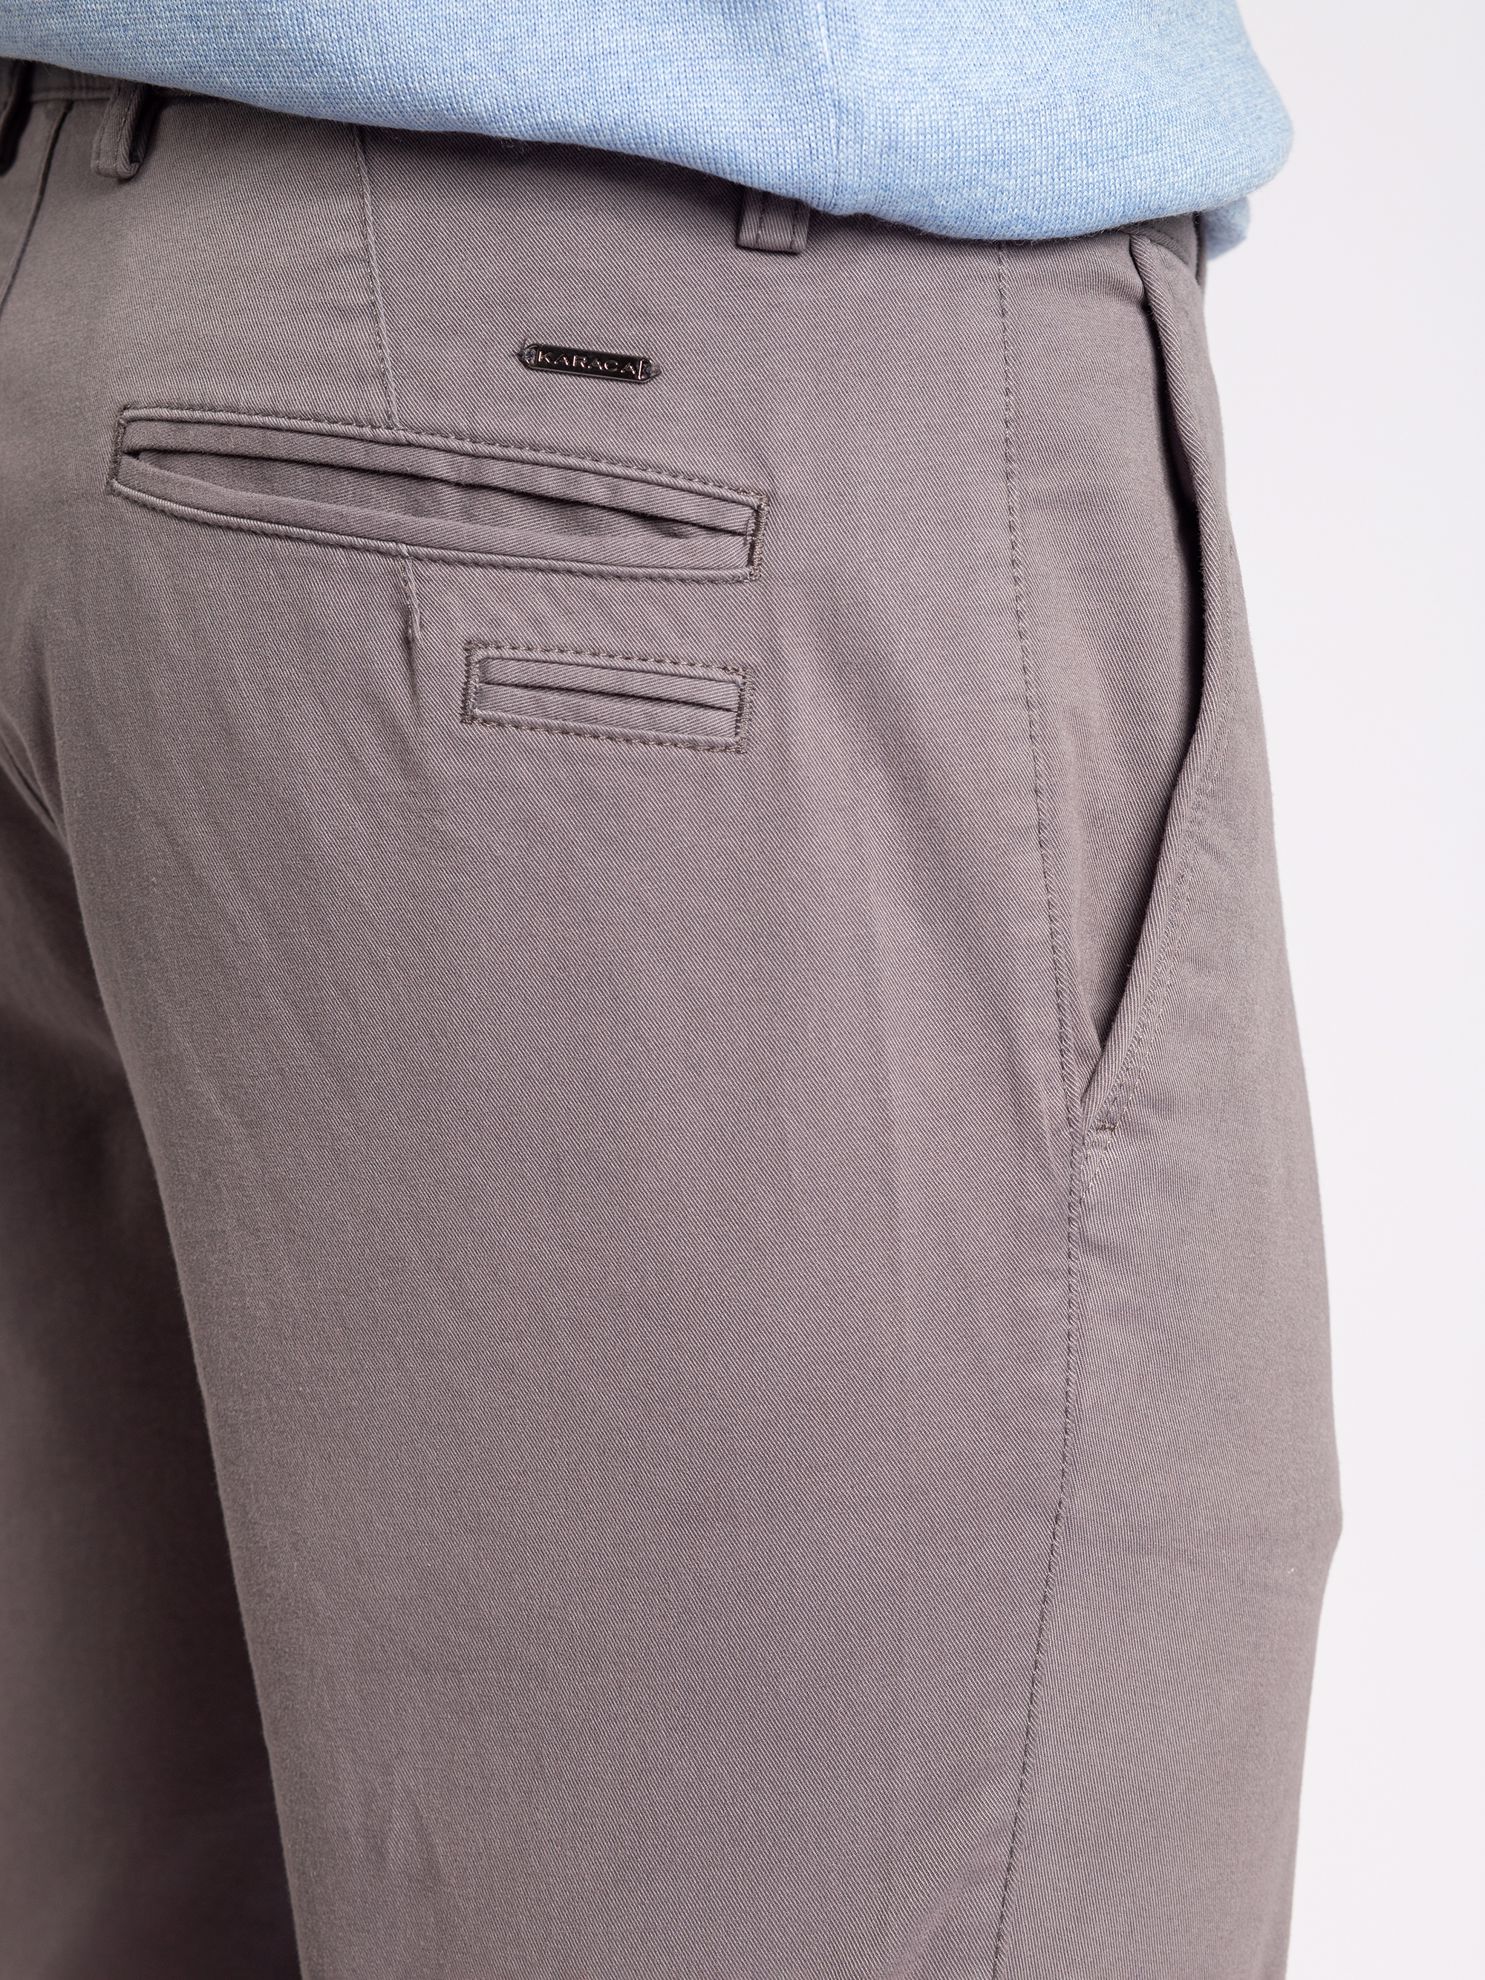 Karaca Erkek 6 Drop Pantolon-Gri. ürün görseli